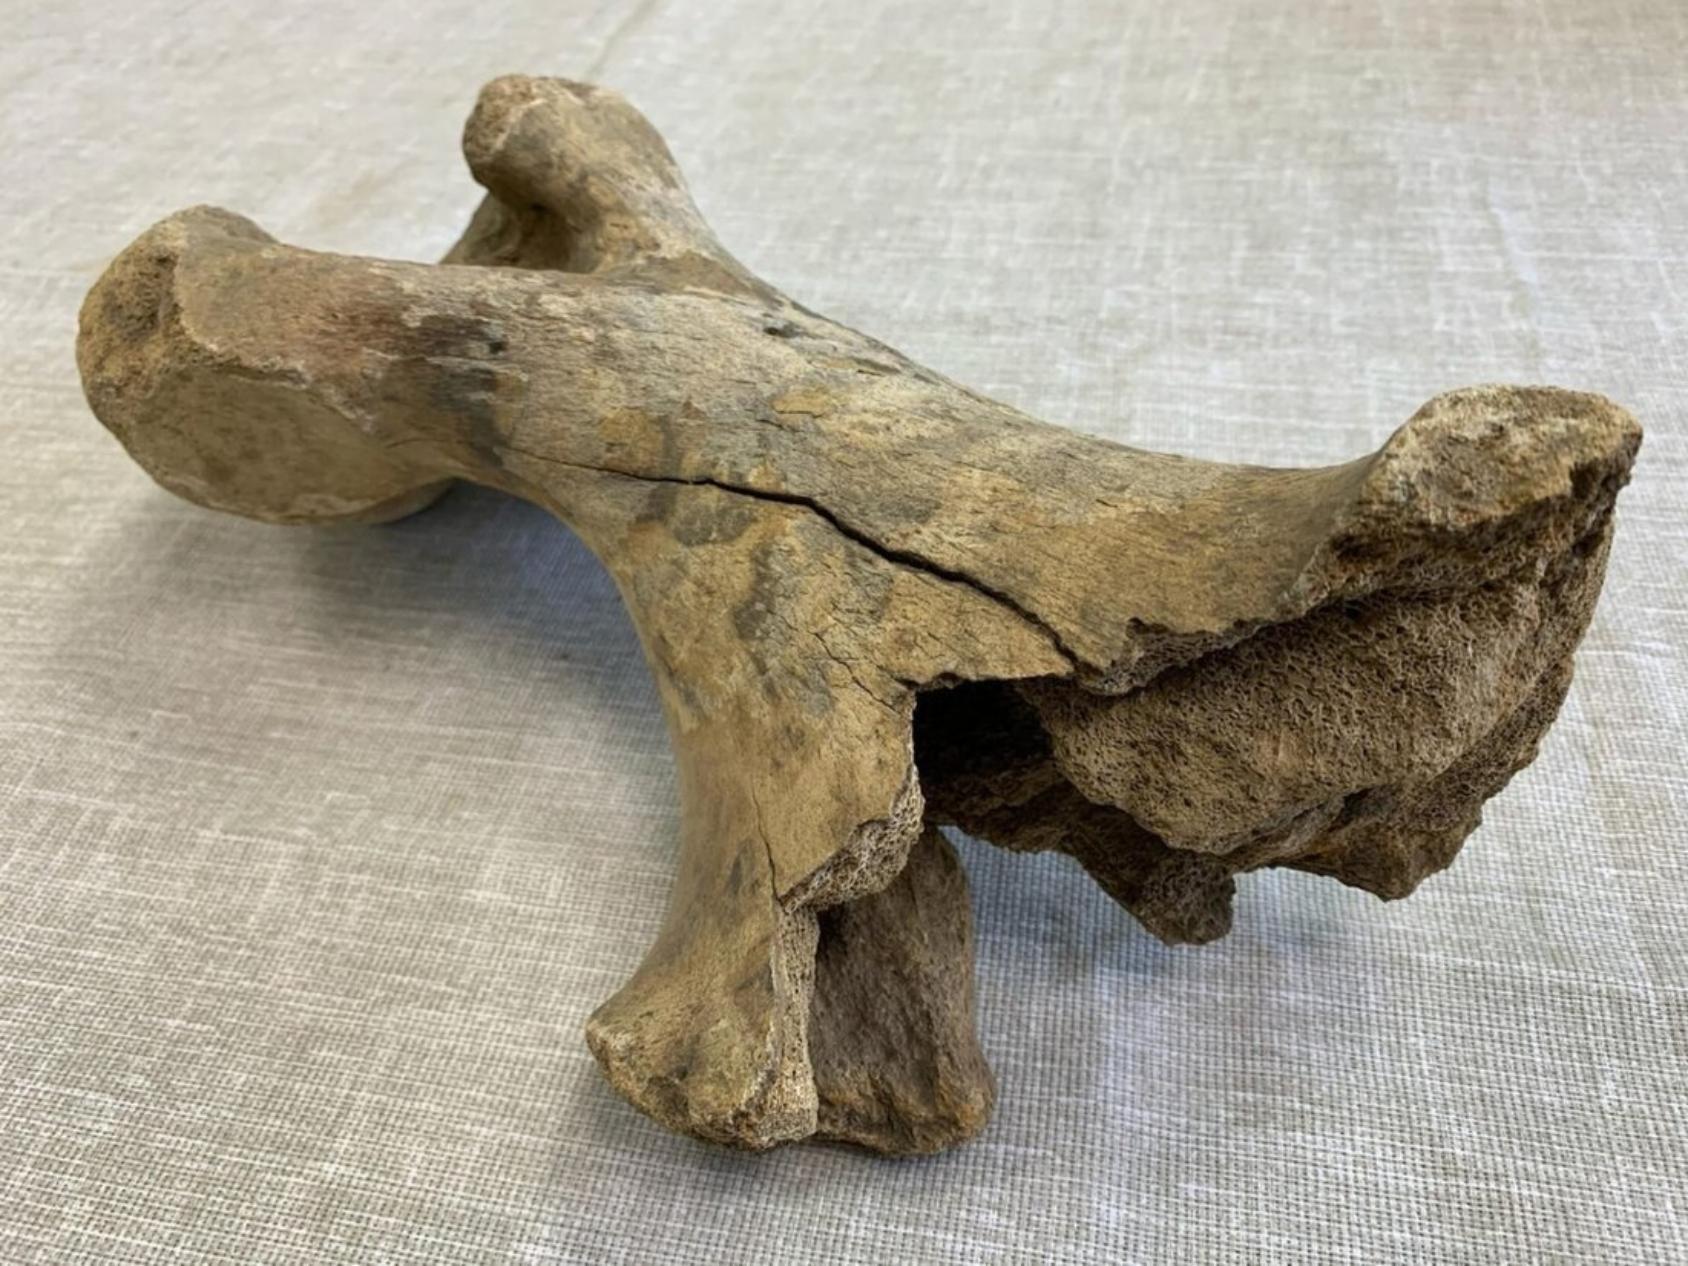 Плечевая косточка, предположительно, шерстистого носорога из Устьянского района